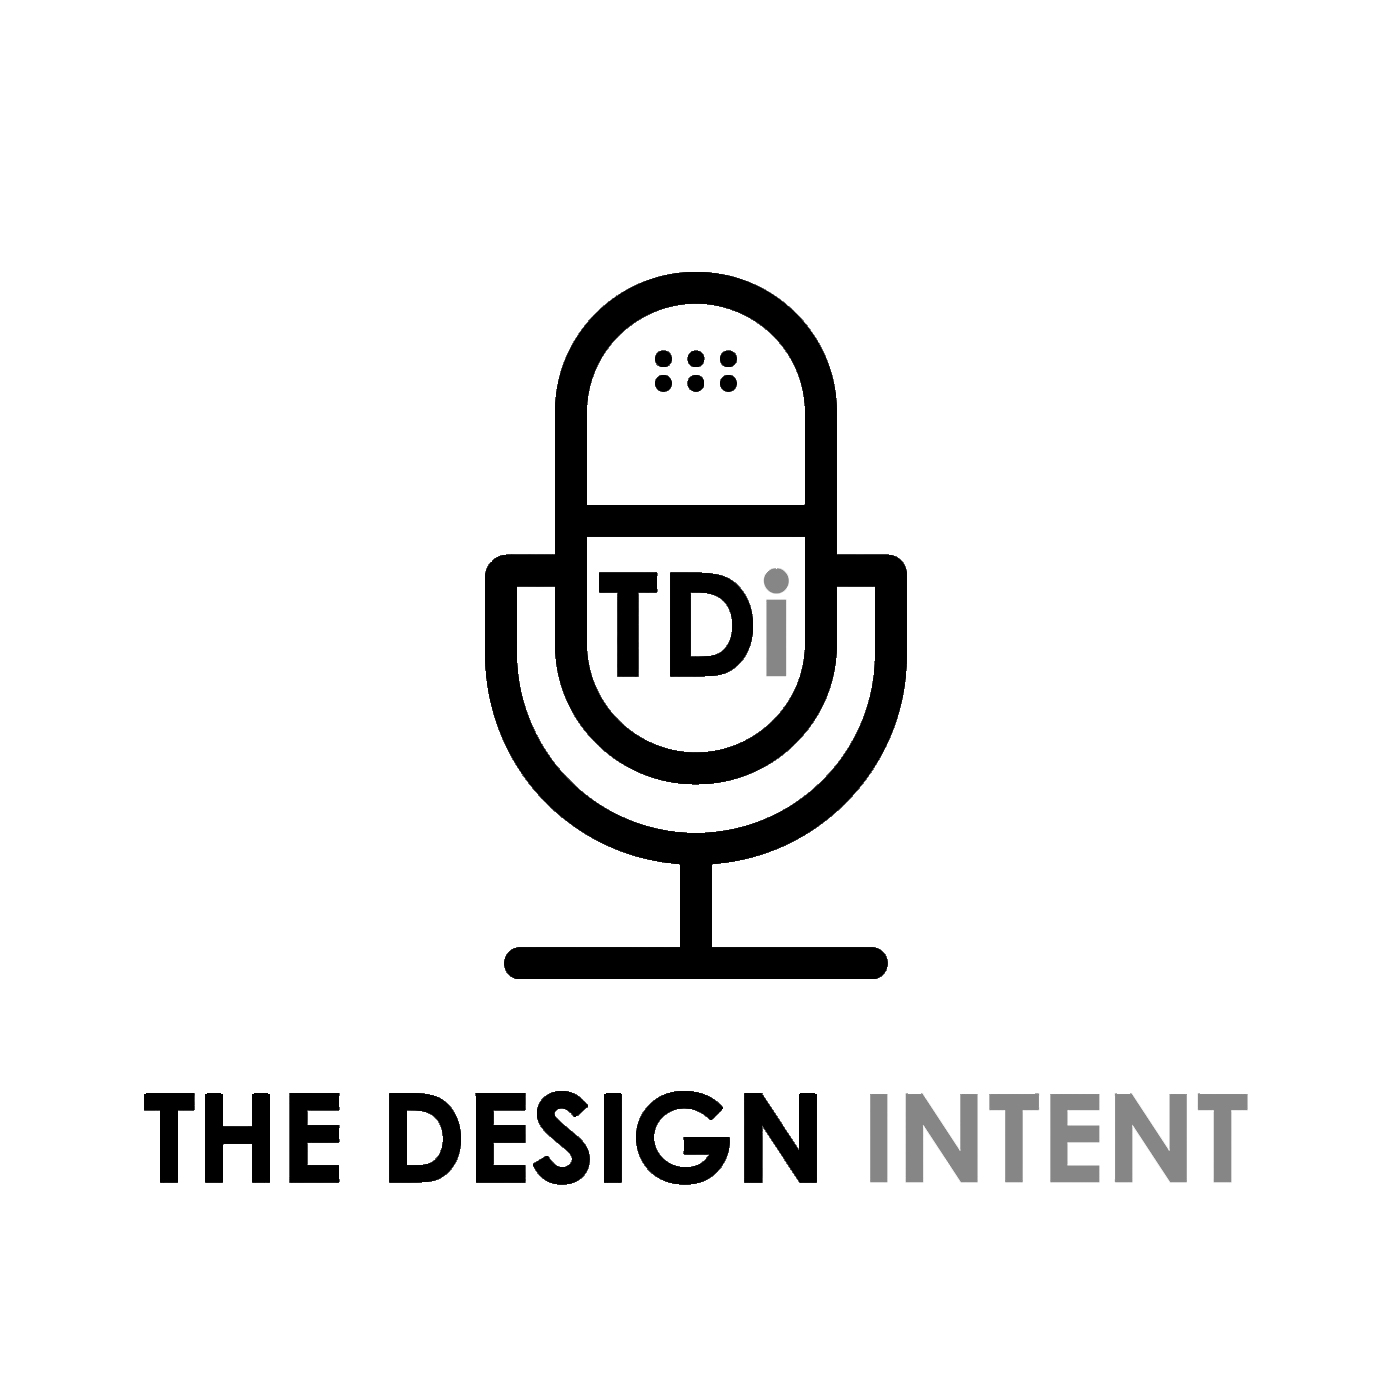 The Design Intent